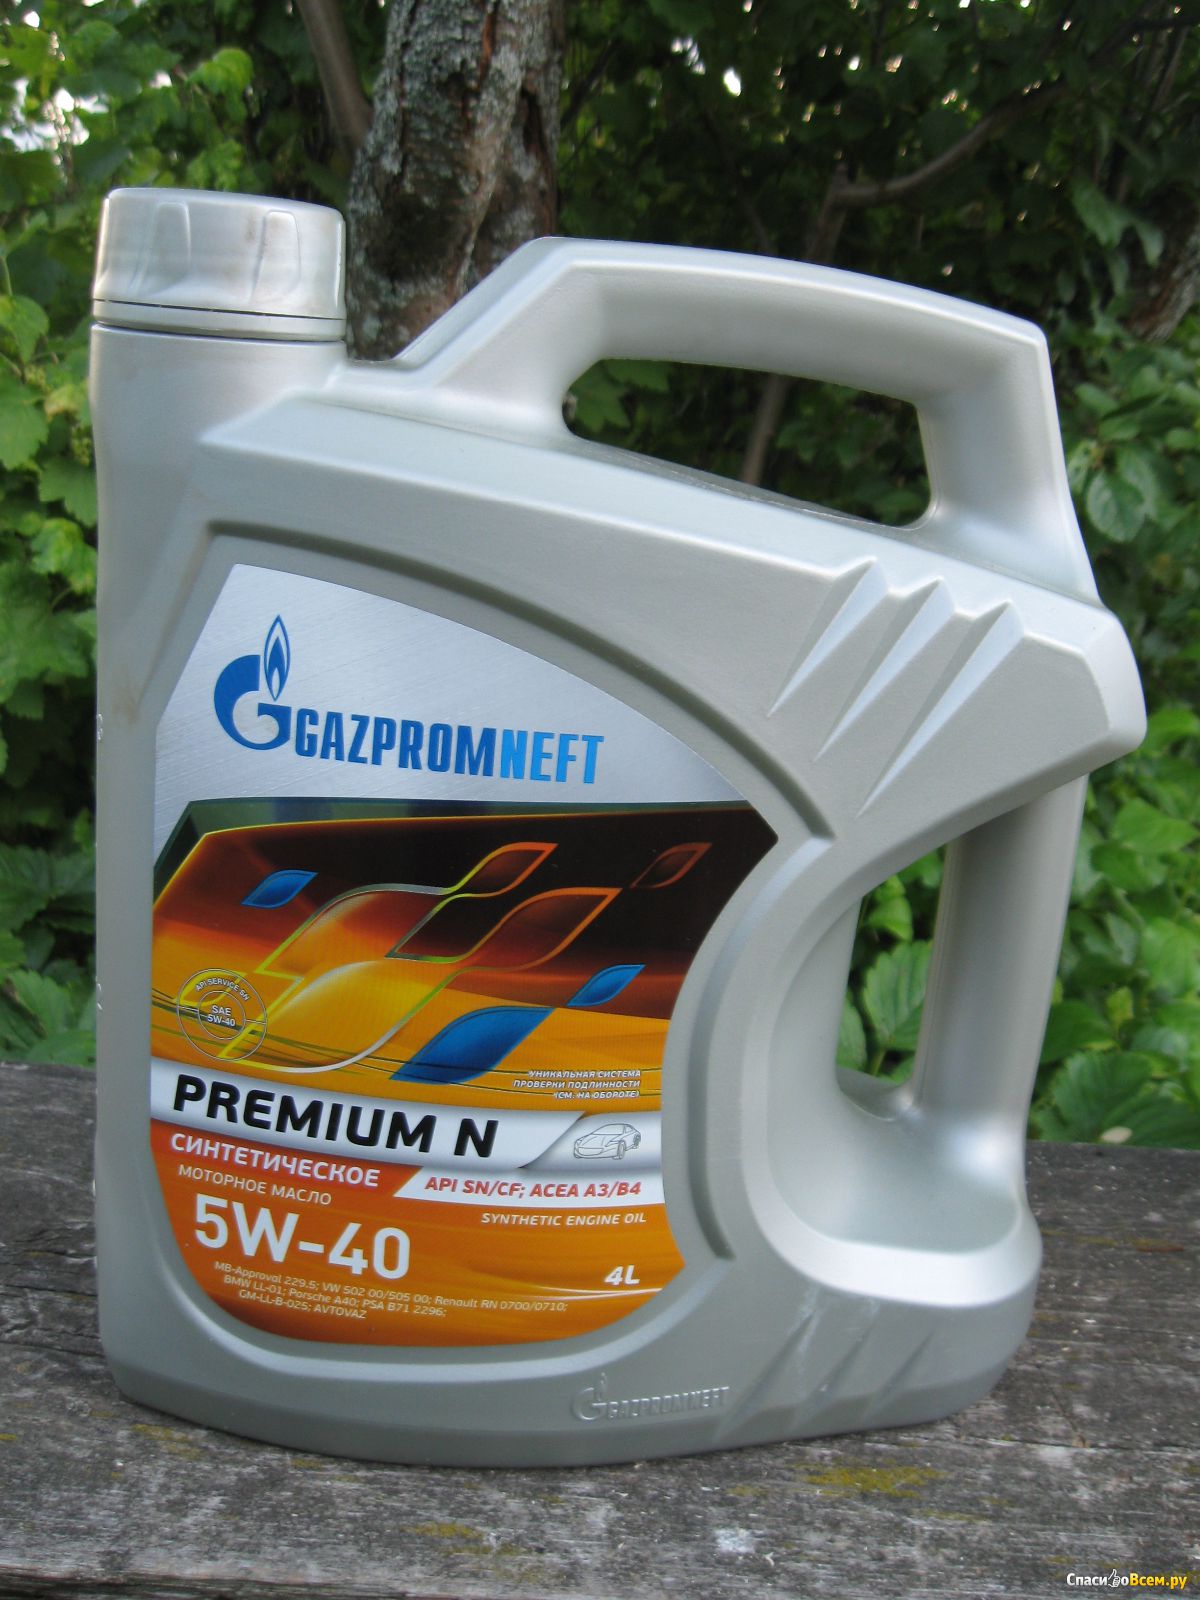 Масло газпромнефть 5 литров. Масло Газпромнефть 5w40 Premium n. Gazpromneft Premium n 5w-40. Масло Газпромнефть 5w40 премиум.